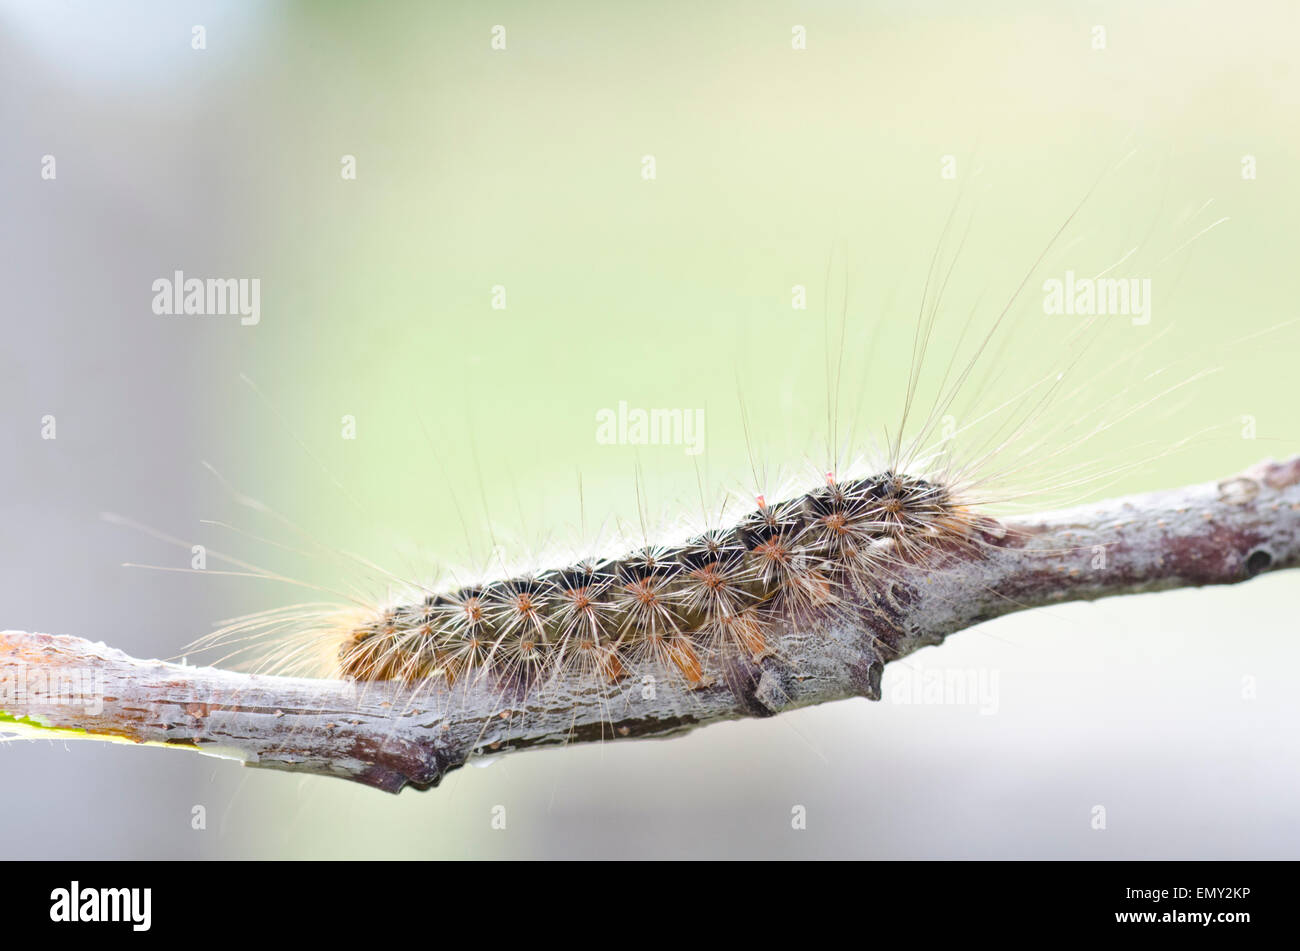 https://c8.alamy.com/comp/EMY2KP/white-cedar-moth-caterpillar-leptocneria-reducta-EMY2KP.jpg